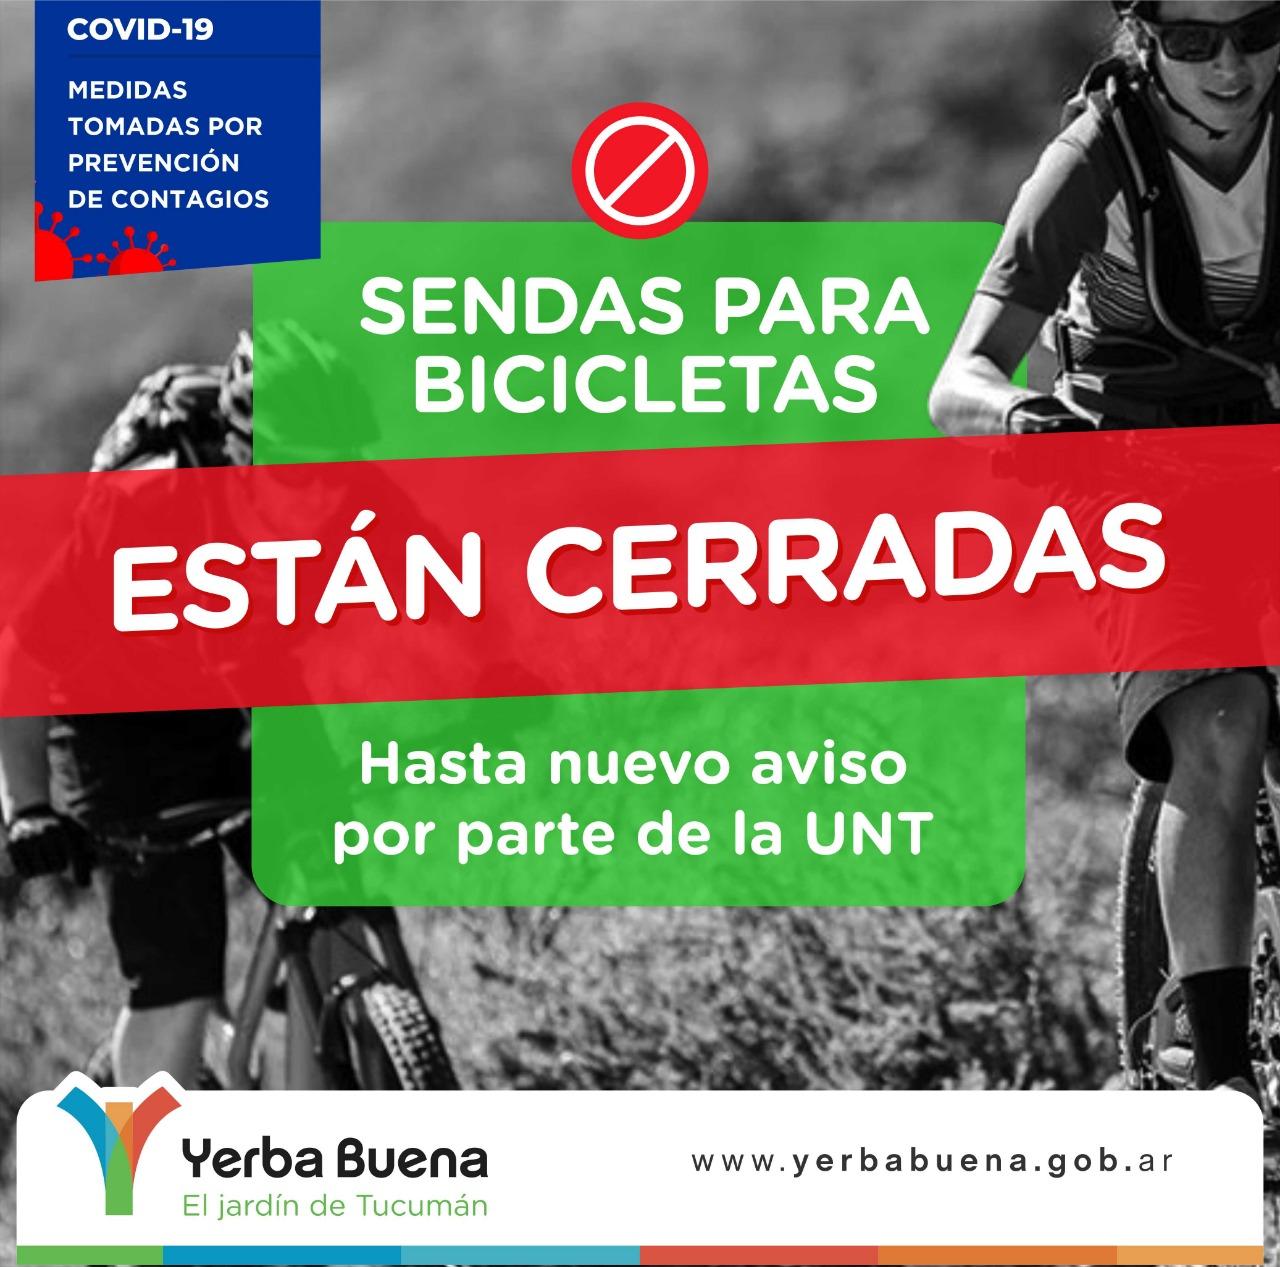 Las sendas para bicicletas siguen cerradas en Yerba Buena por prevención de contagios